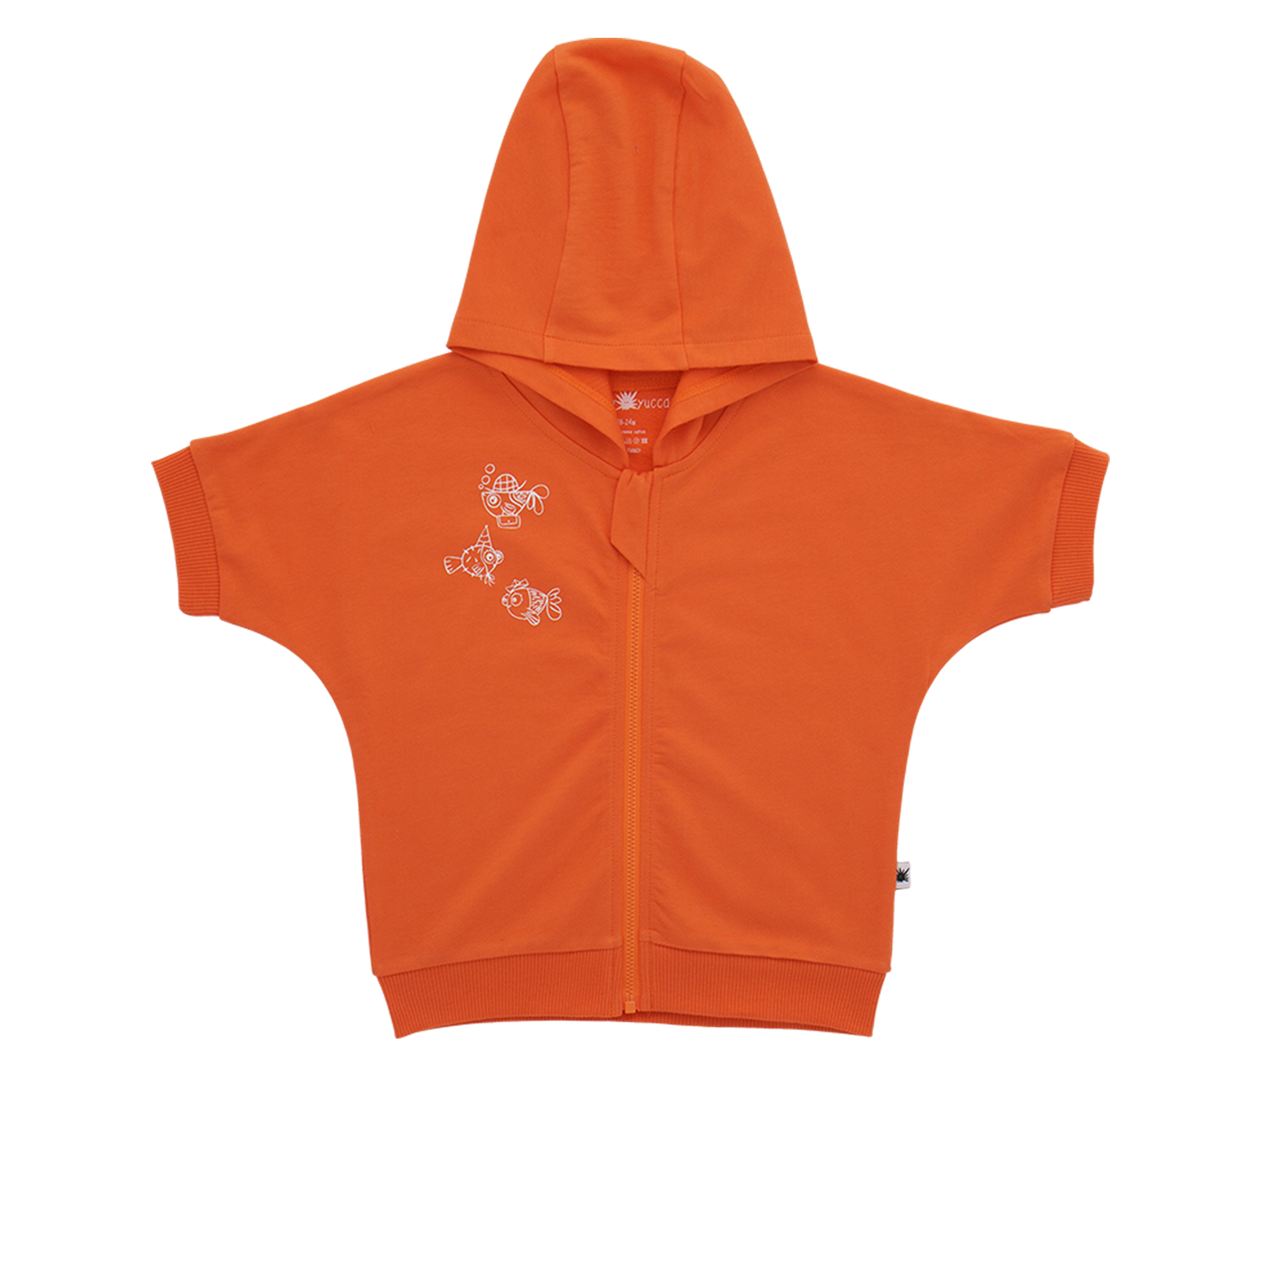 "Breeze" Sweatshirt - Dark Orange